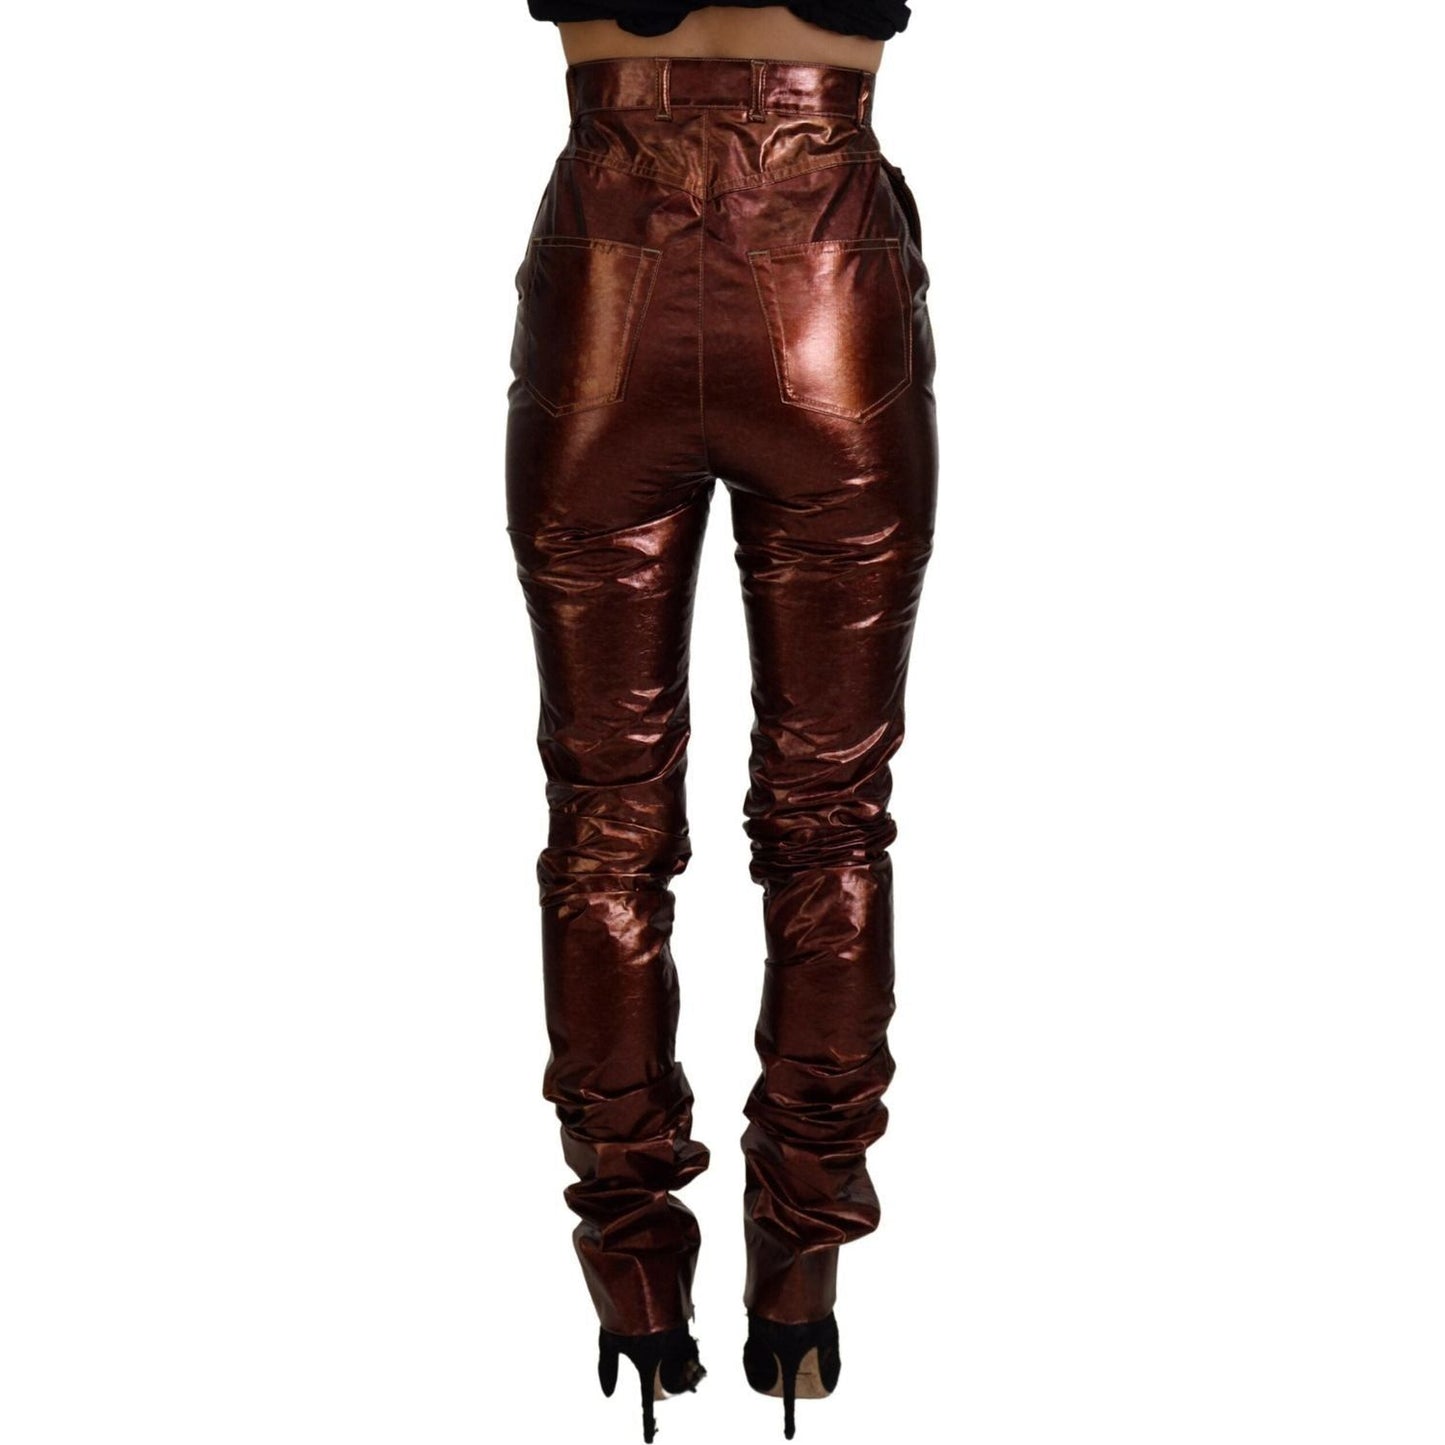 Dolce & Gabbana High Waist Skinny Jeans in Metallic Bronze metallic-bronze-high-waist-skinny-jeans IMG_9564-scaled-464c0c10-93f.jpg